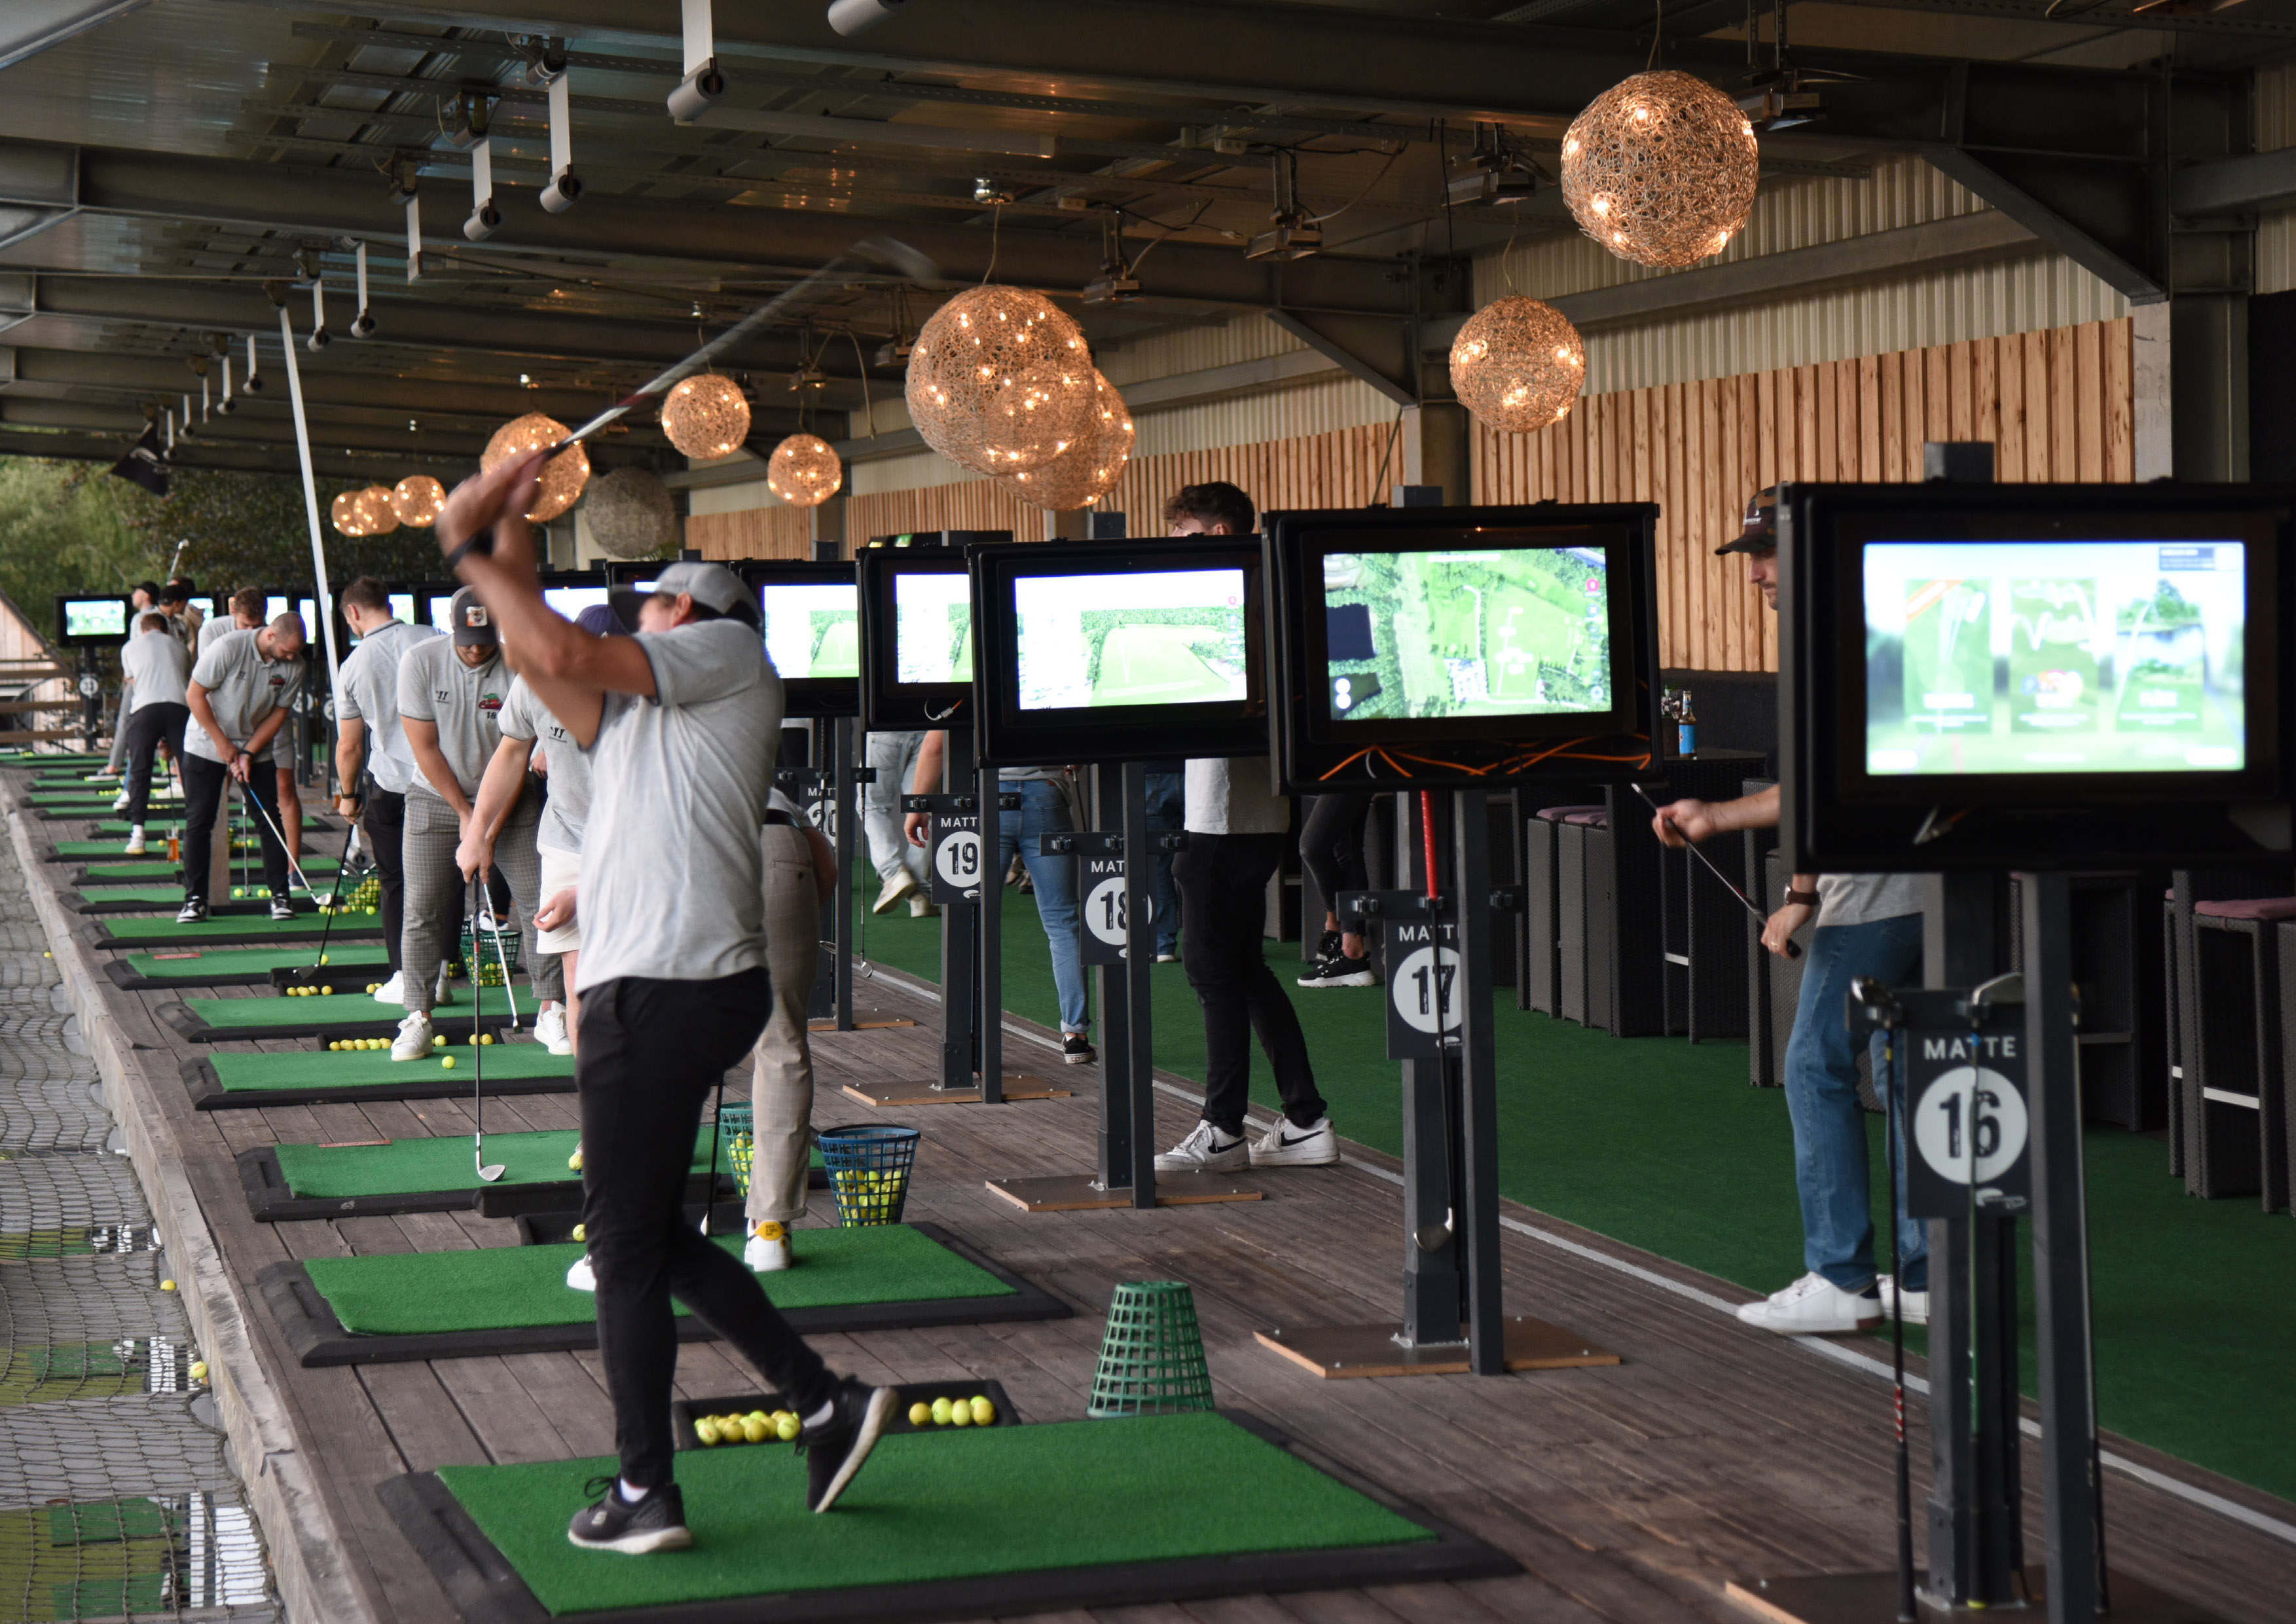 Das neue Golf Lounge Resort Alle Blicke richten sich aufs 20-jährige Jubiläum